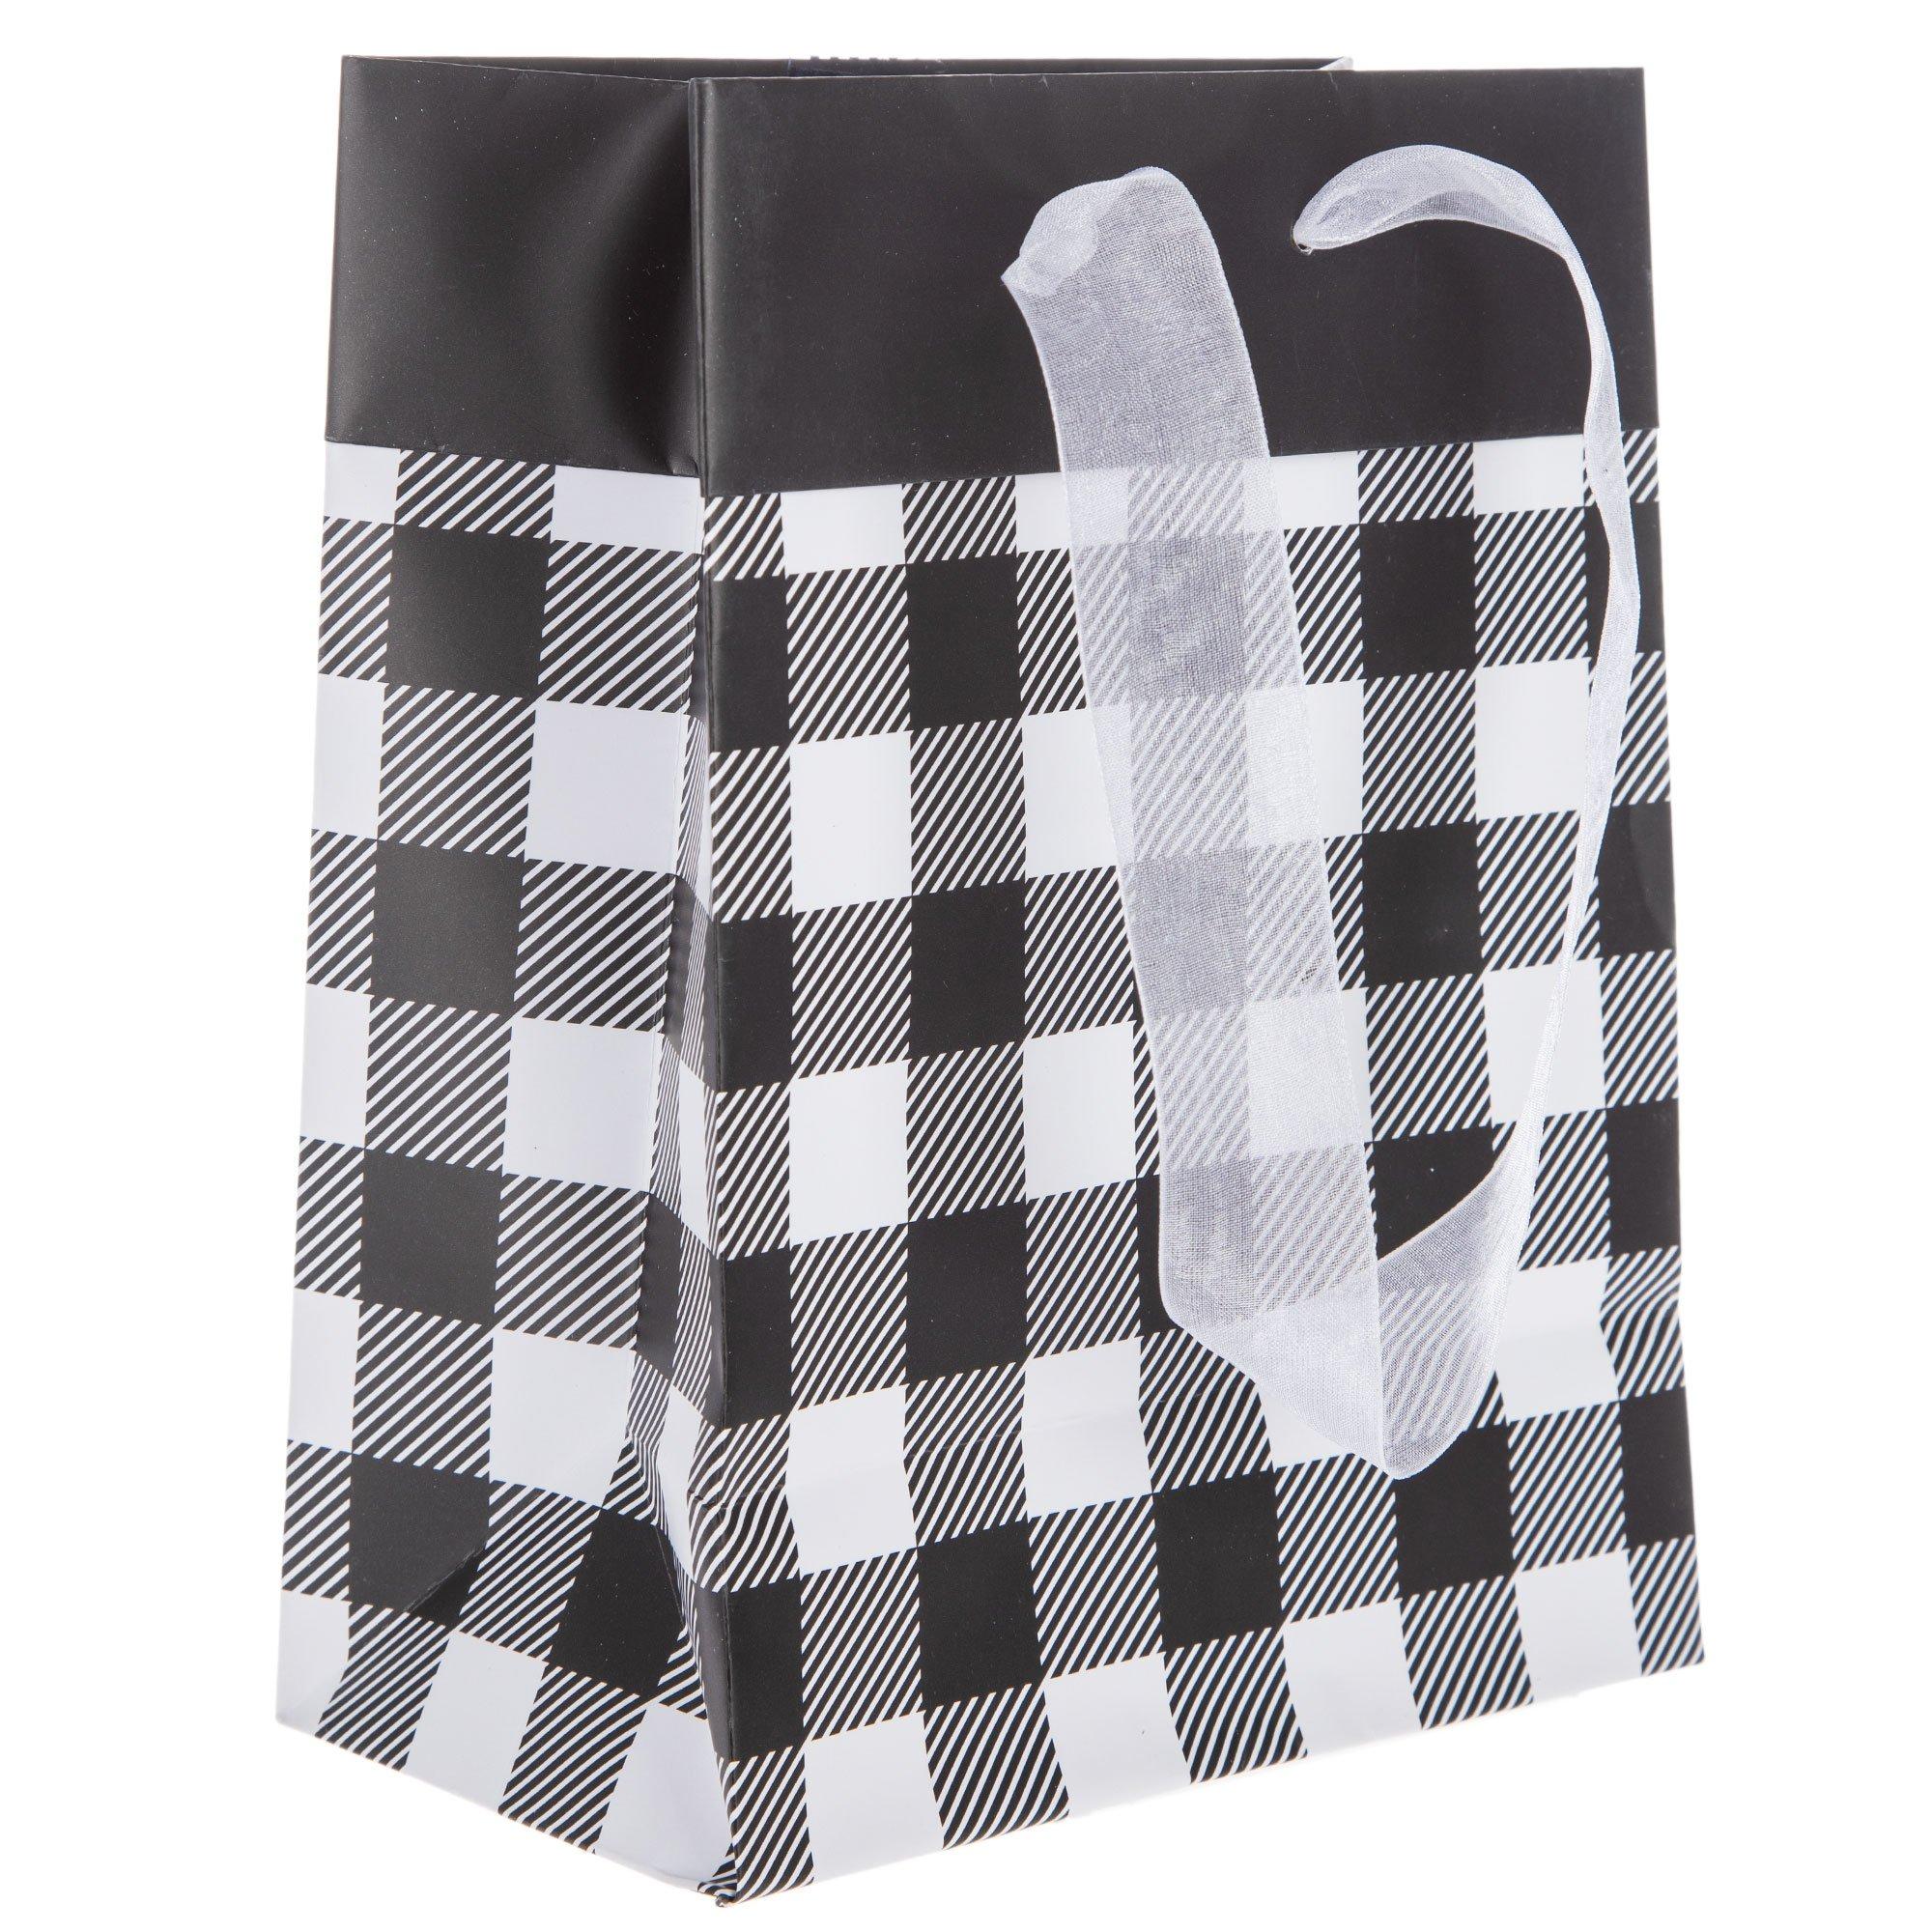 Black & White Plaid Paper Shopping Bags